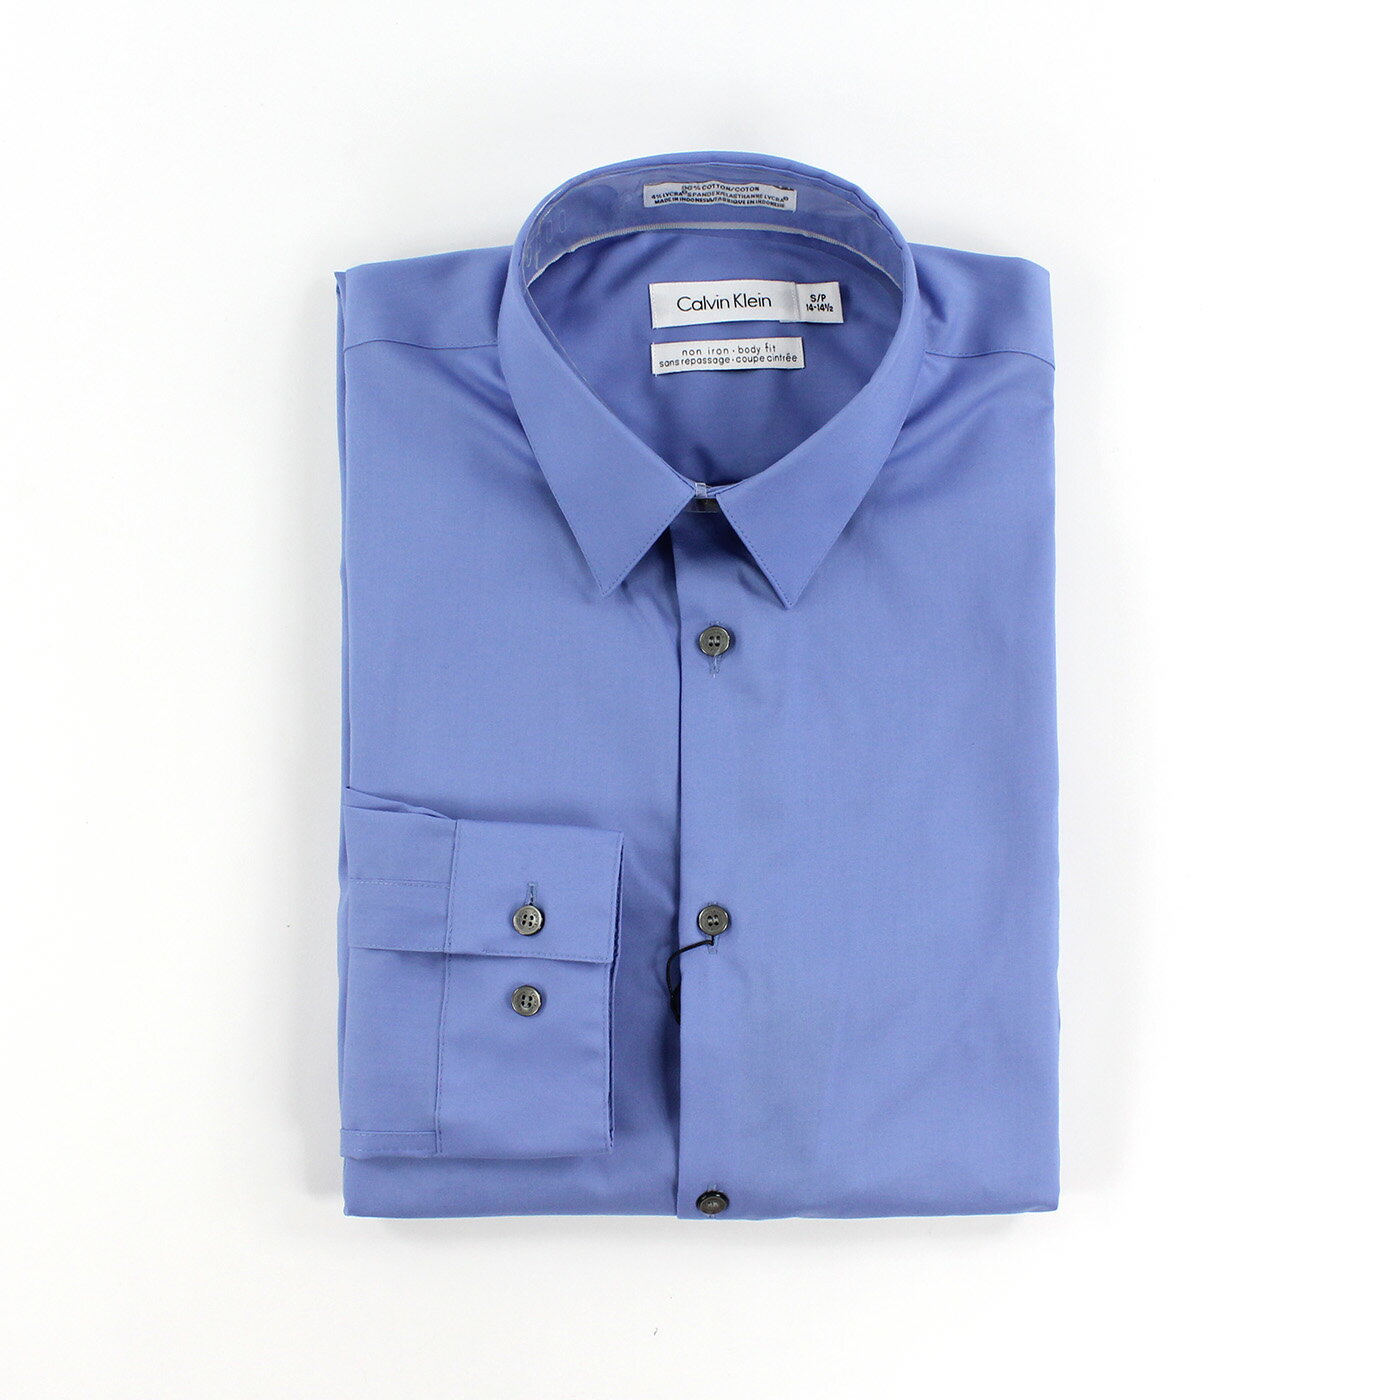 美國百分百【全新真品】Calvin Klein 襯衫 CK 男衣 上班 長袖 上衣 商務 專櫃款 淺藍 XS號 C615 0